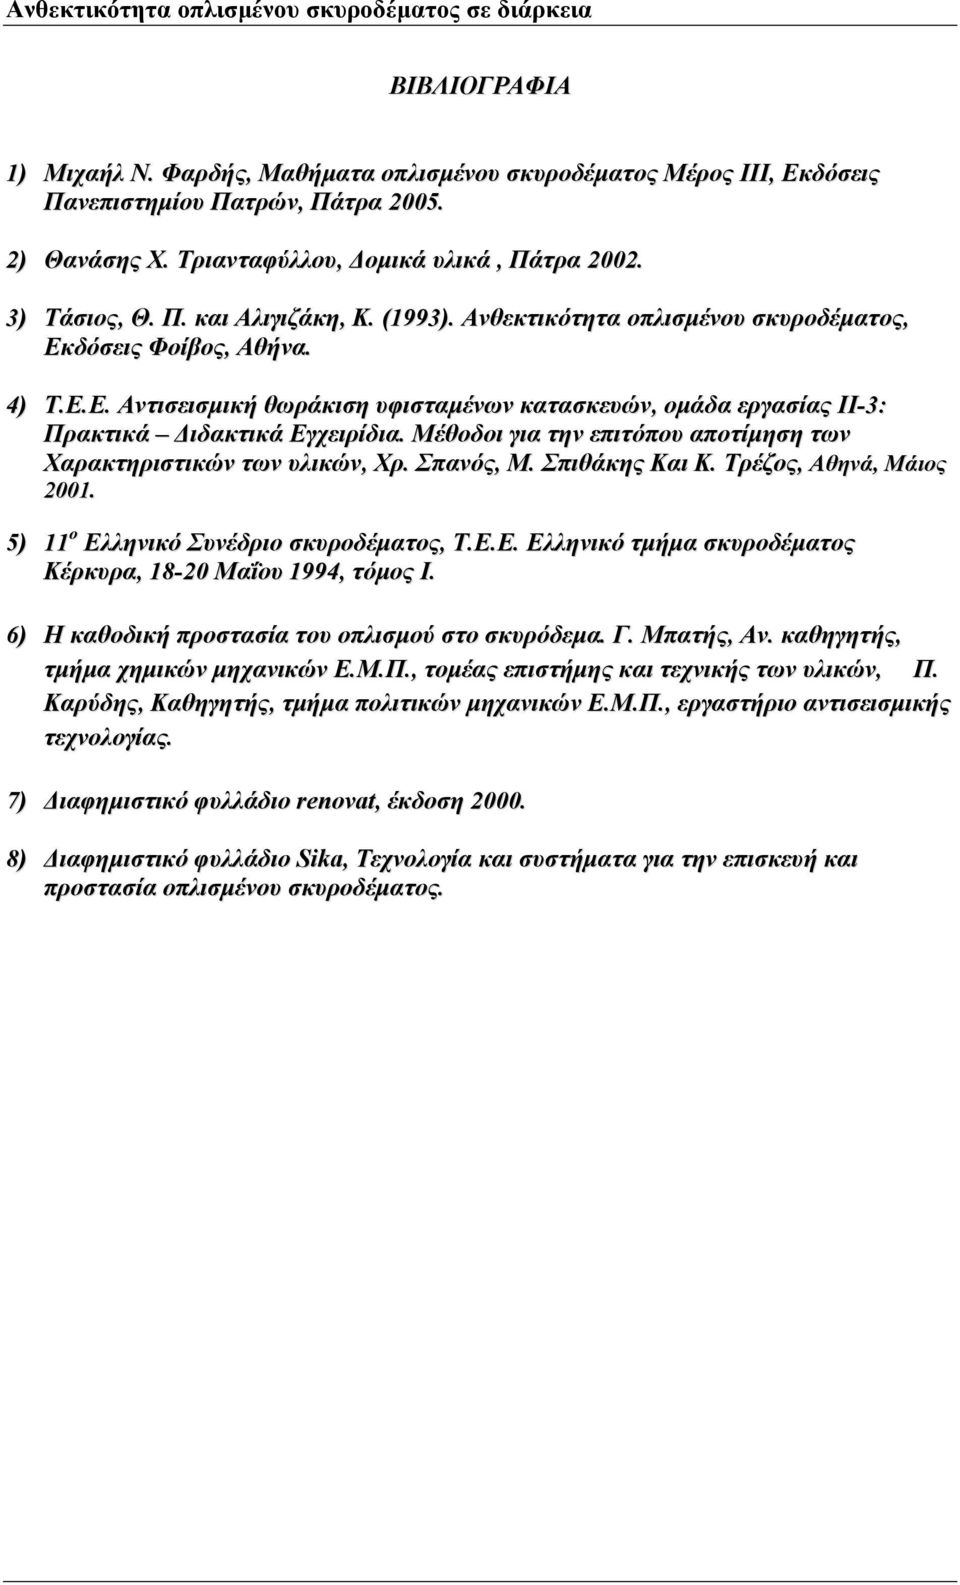 Μέθοδοι για την επιτόπου αποτίμηση των Χαρακτηριστικών των υλικών, Χρ. Σπανός, Μ. Σπιθάκης Και Κ. Τρέζος, Αθηνά, Μάιος 2001. 5) 11 ο Ελληνικό Συνέδριο σκυροδέματος, Τ.Ε.Ε. Ελληνικό τμήμα σκυροδέματος Κέρκυρα, 18-20 Μαΐου 1994, τόμος Ι.